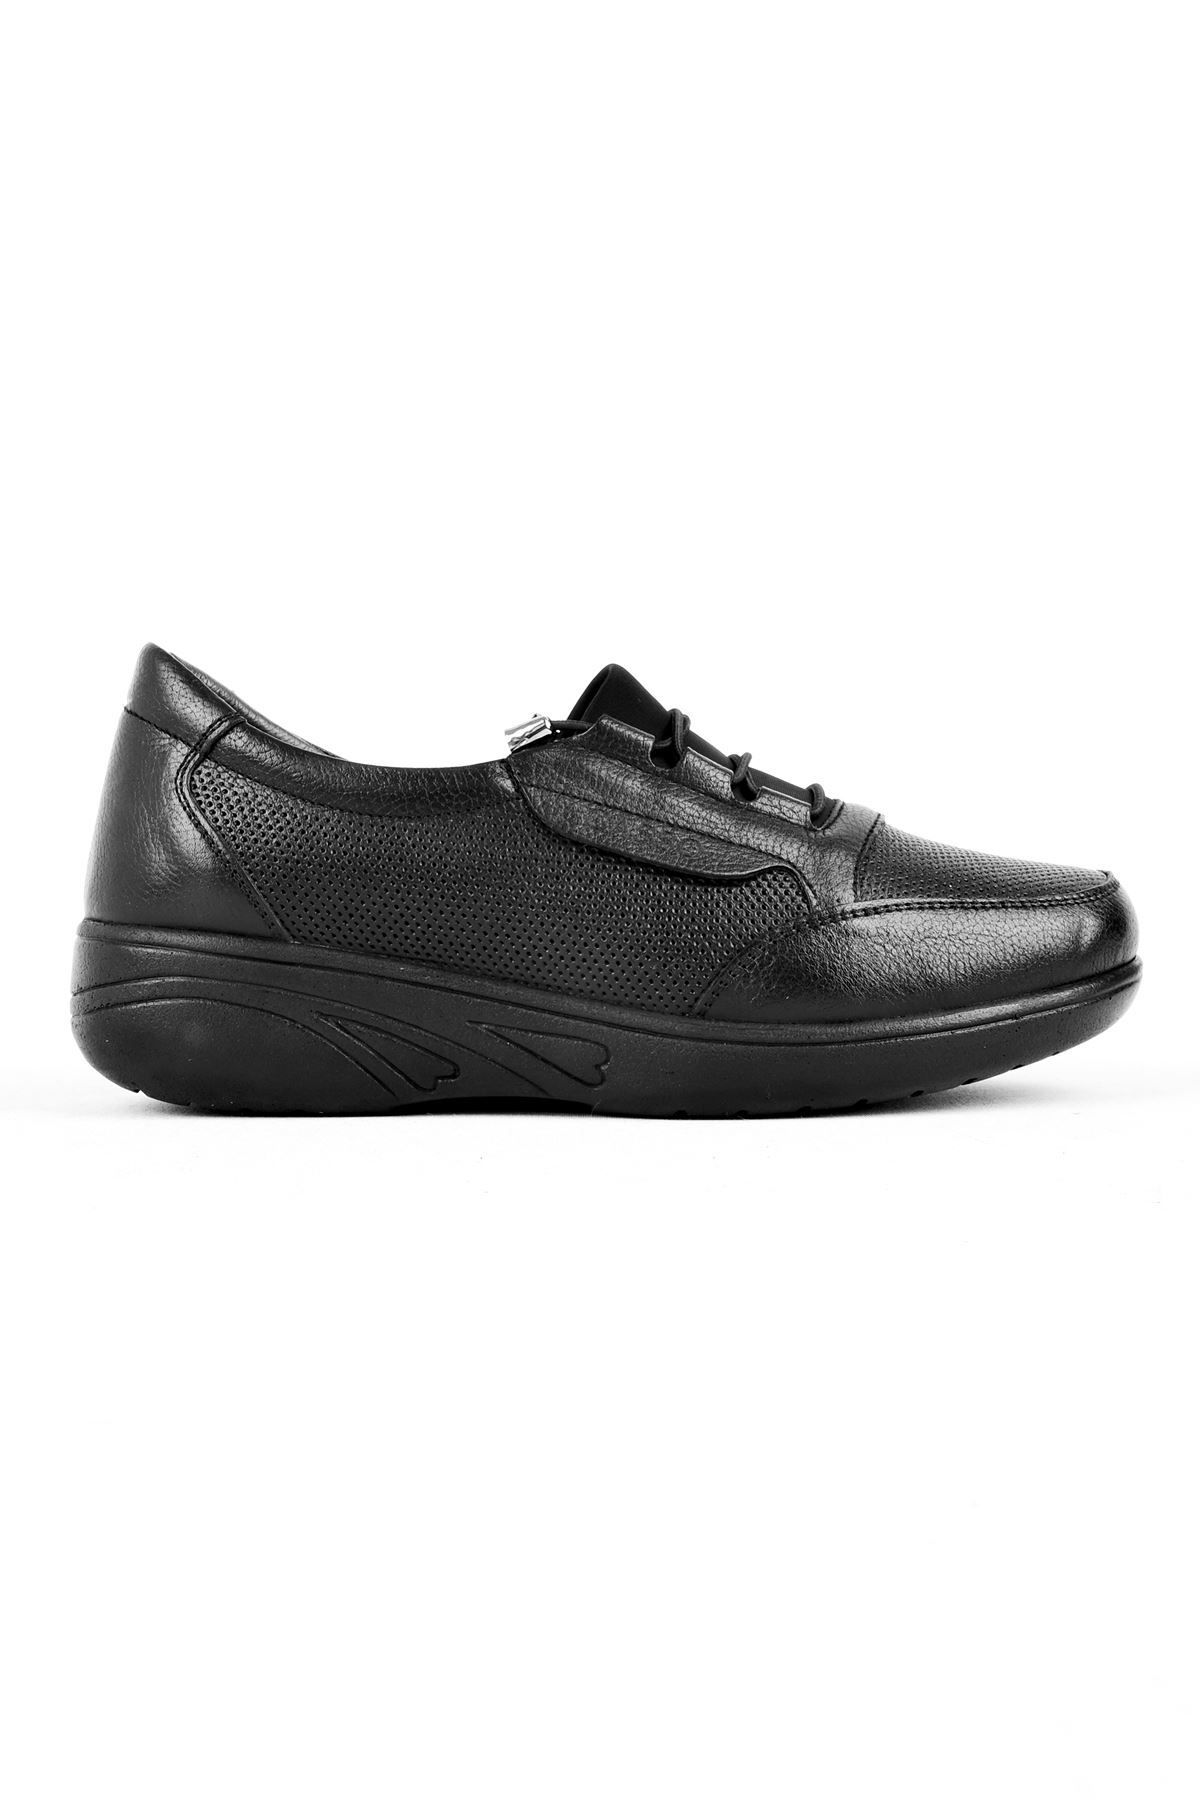 LAL SHOES & BAGS Lamie Delik Detay Hakiki Deri Kadın Günlük Ayakkabı-siyah